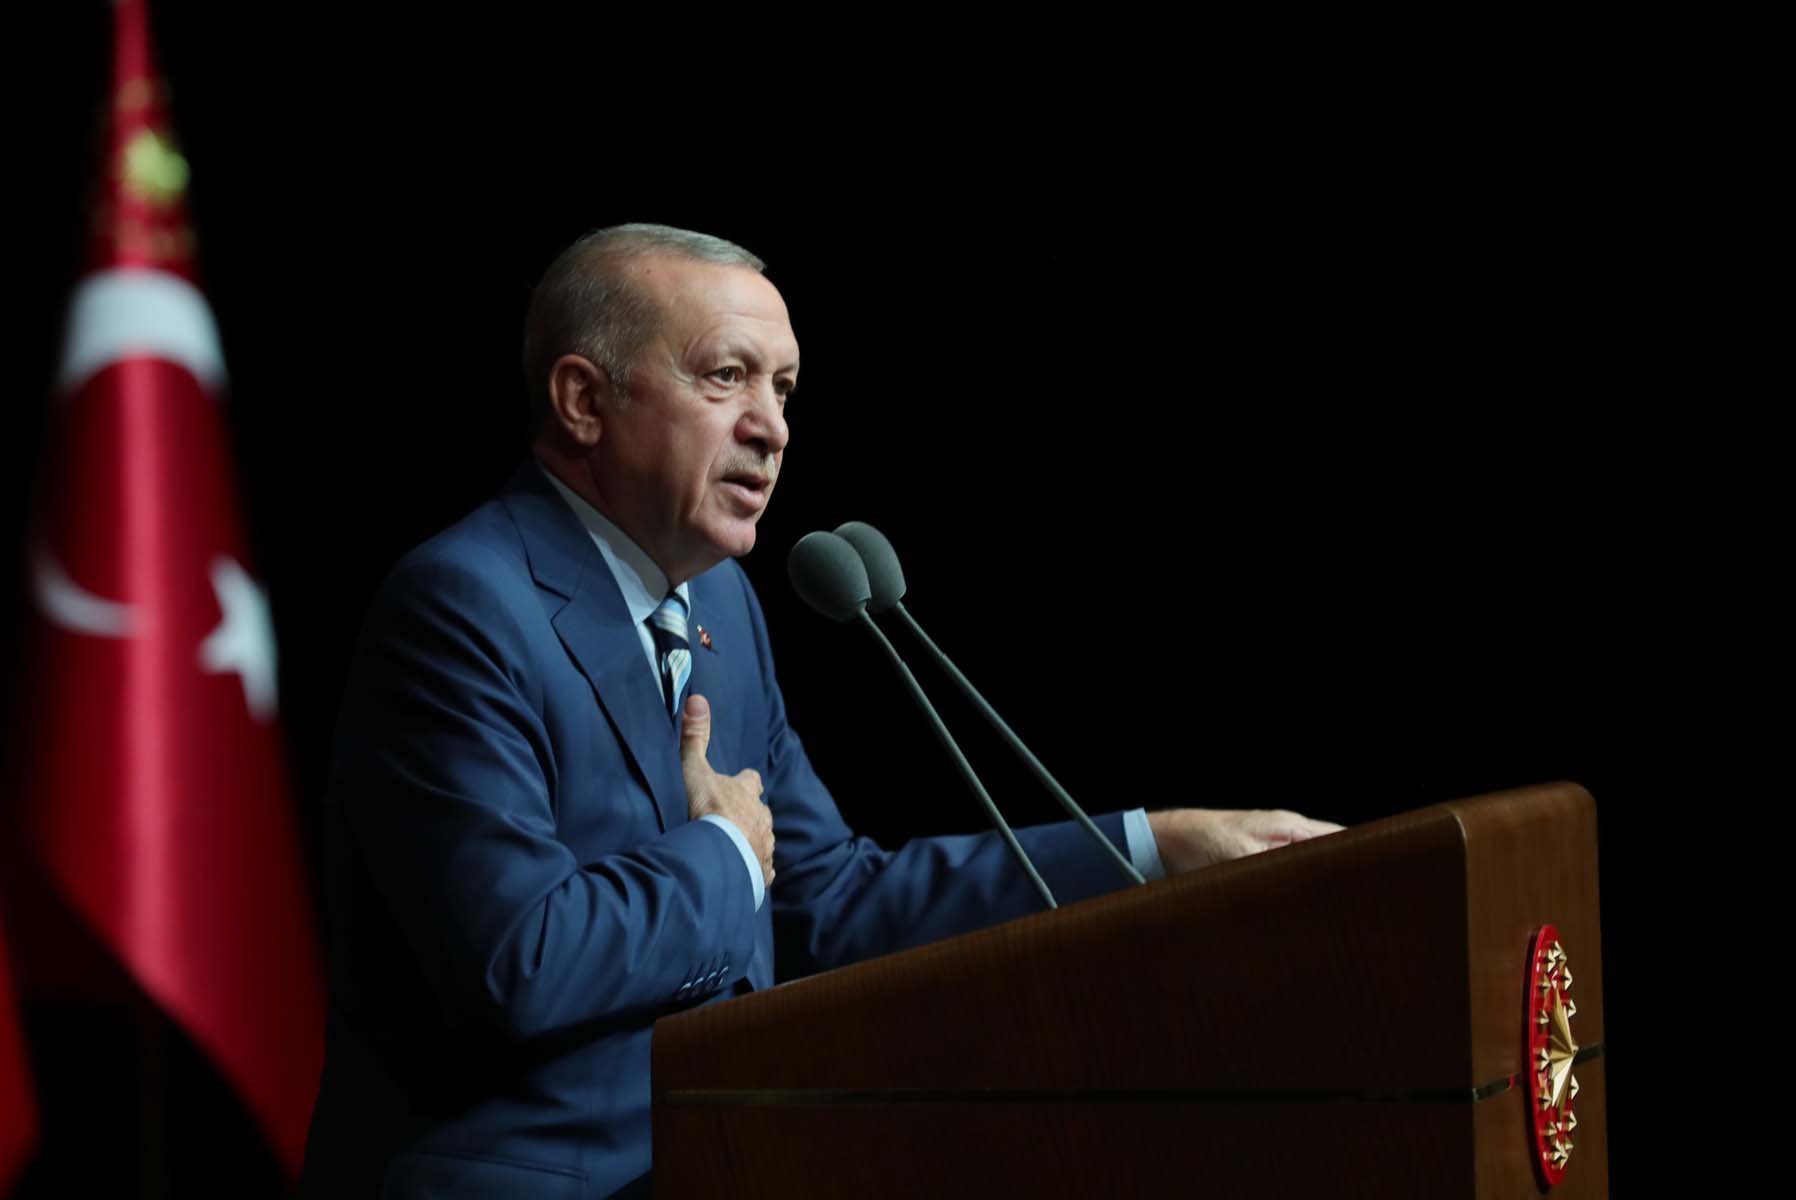 Cumhurbaşkanı Erdoğan'ı hedef alan Kılıçdaroğlu'nun amacını Ahmet Hakan açıkladı: Anketlerde Ekrem İmamoğlu ile Mansur Yavaş’ı geçmek.